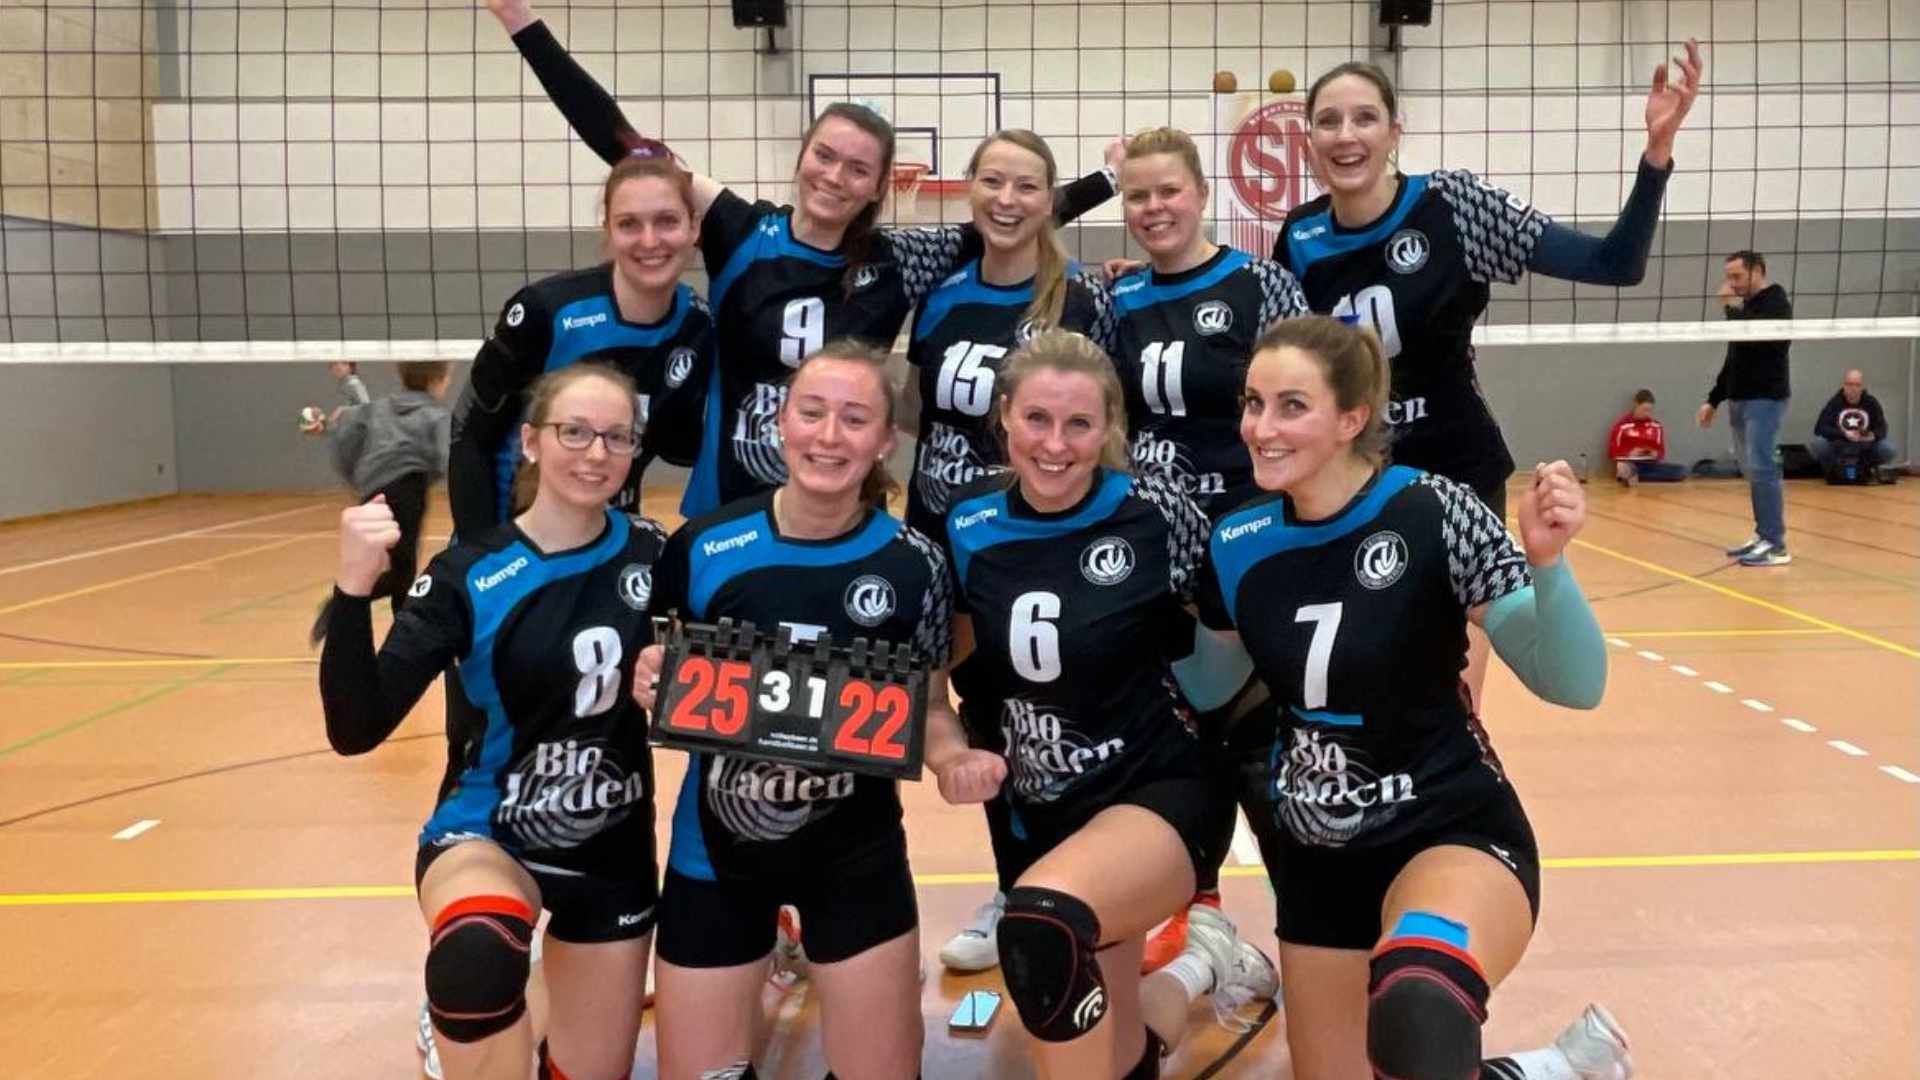 CVV Brandenburgliga Damen 1 Heimspiel Cottbuser Volleyballverein